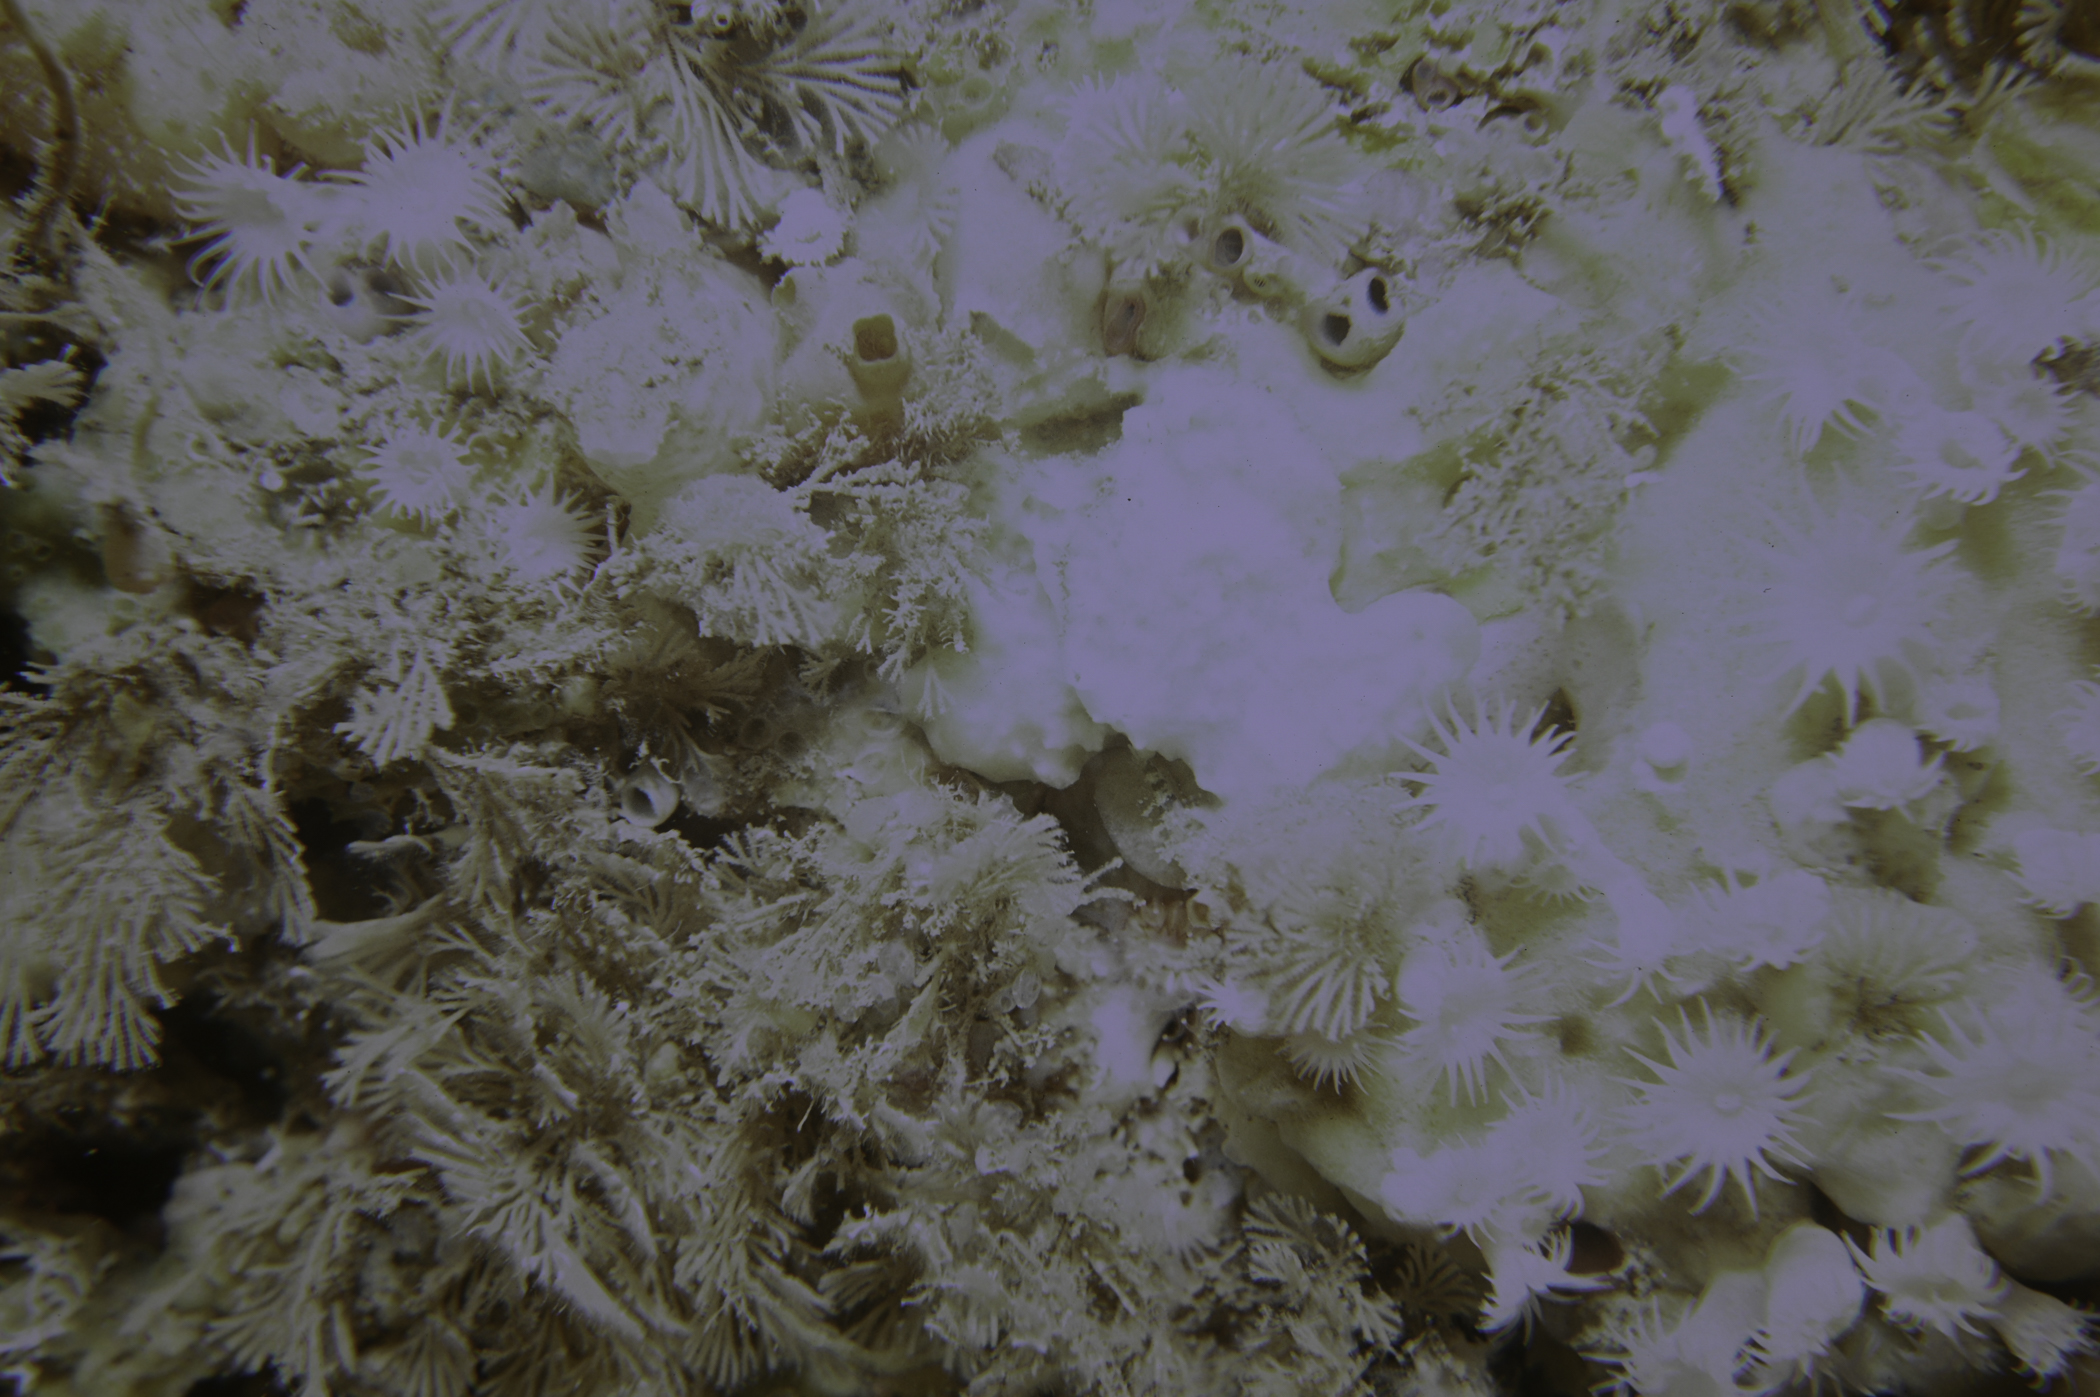 Parazoanthus anguicomus, Caberea ellisii. Site: N of West Lighthouse, Rathlin Island. 